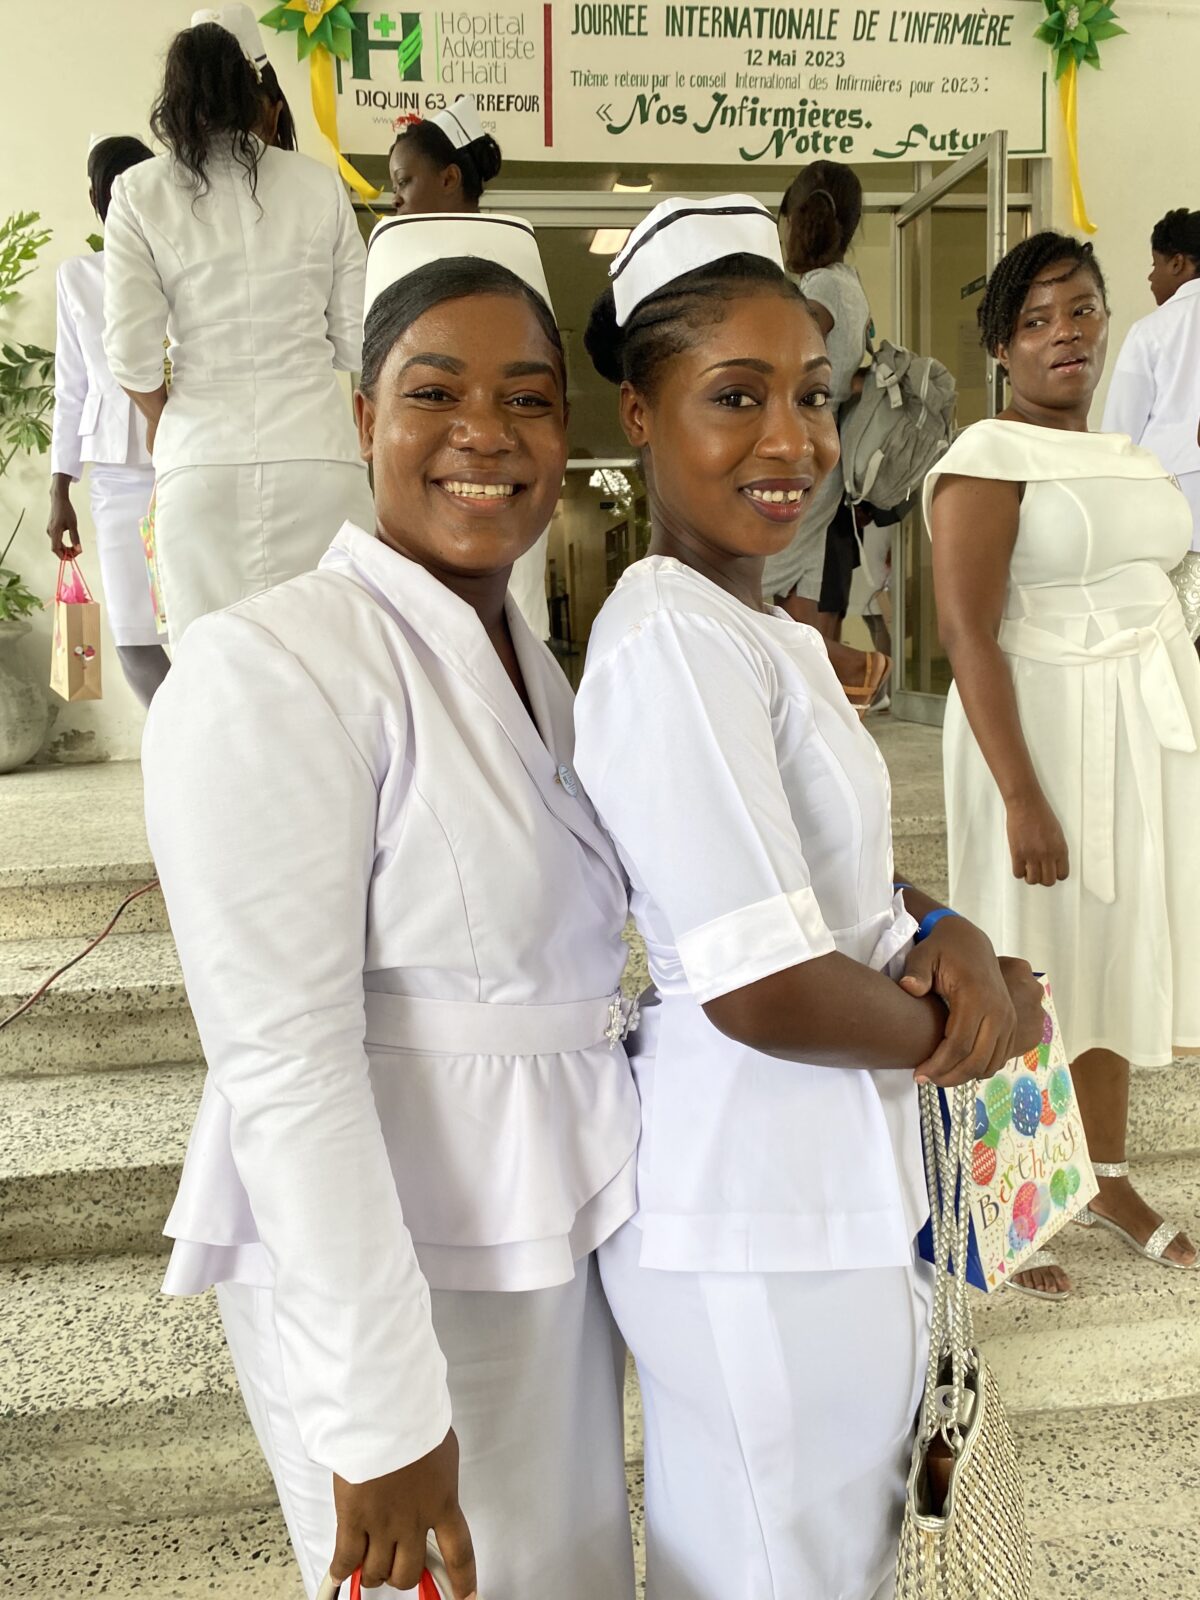 two nurses smiling while celebrating Nurses Day